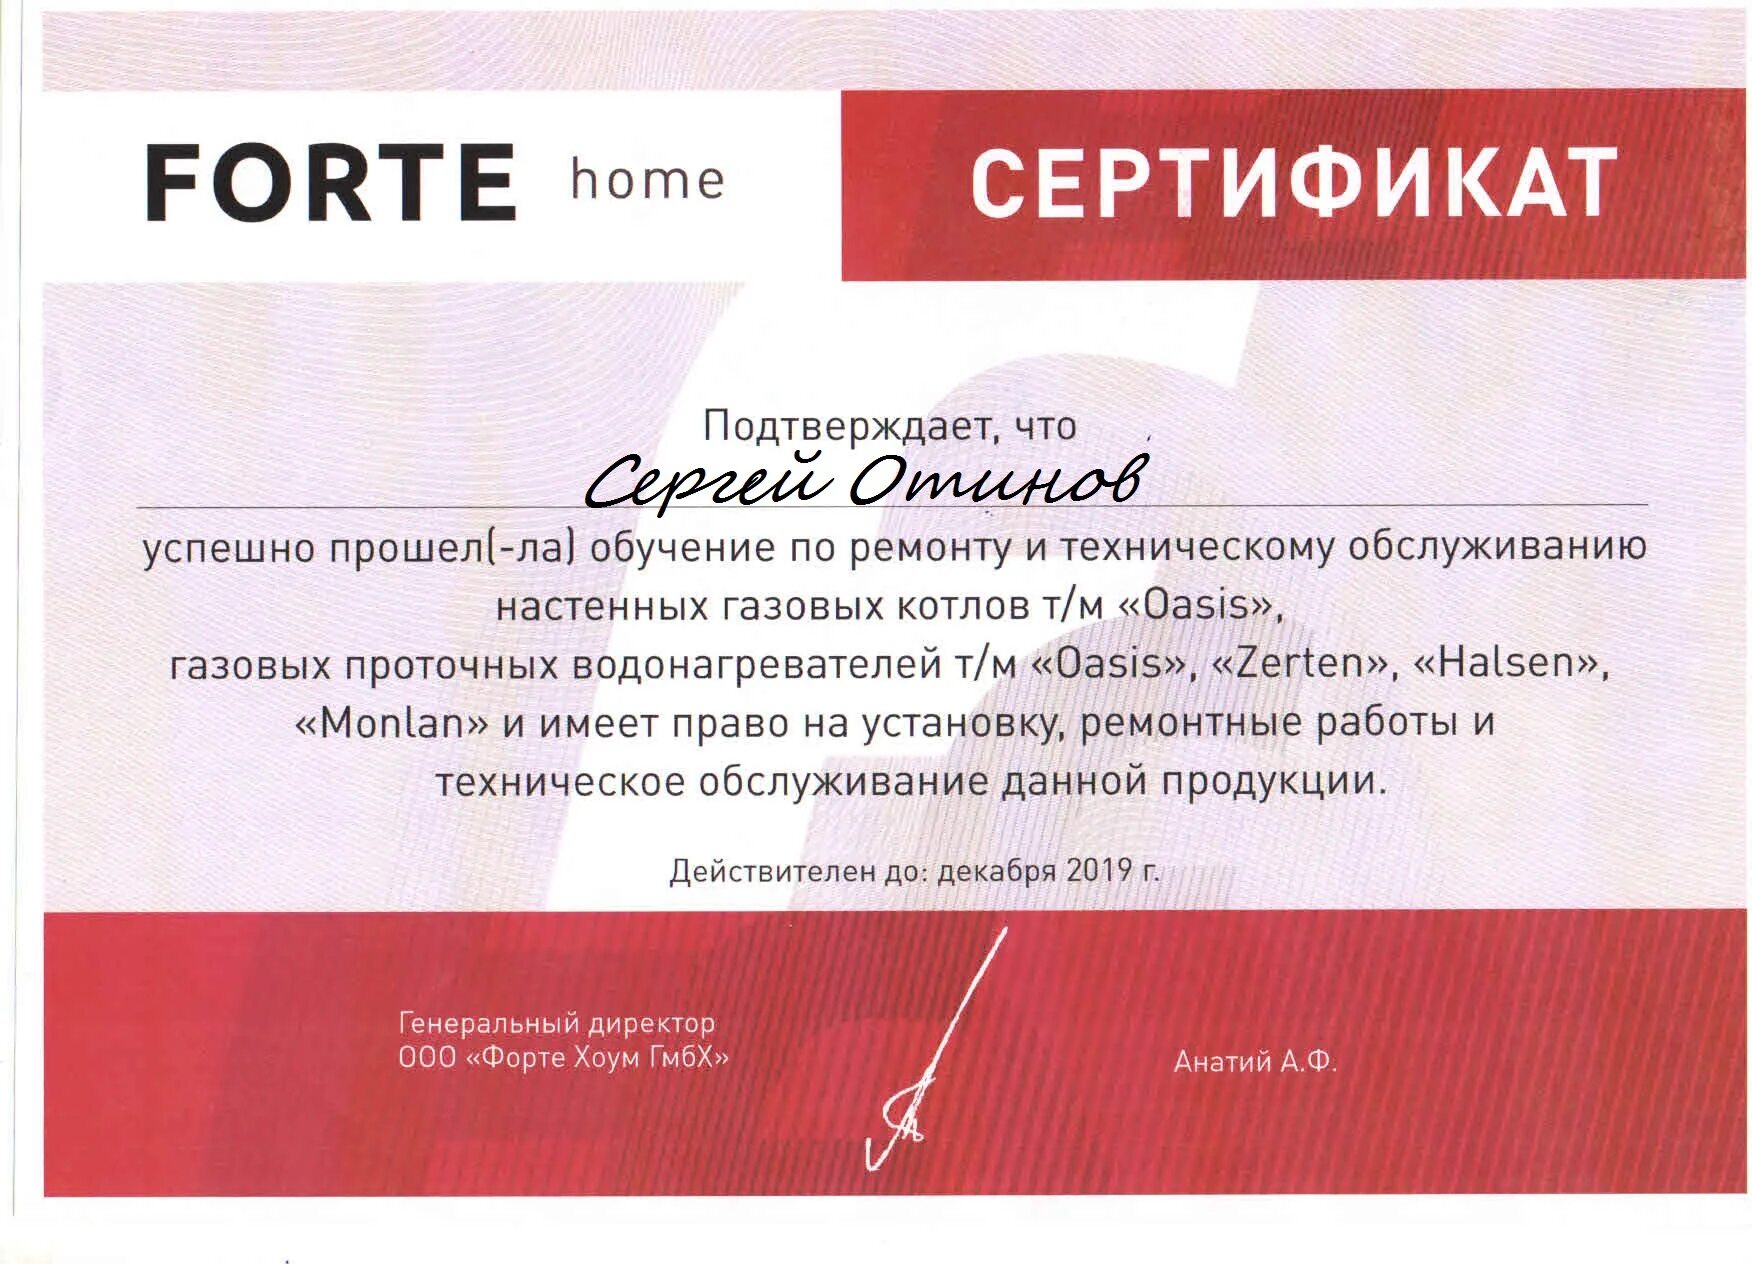 Сертификат на обслуживание газовых котлов. Forte Home GMBH. Форте ГМБХ. Хоум сертификат.